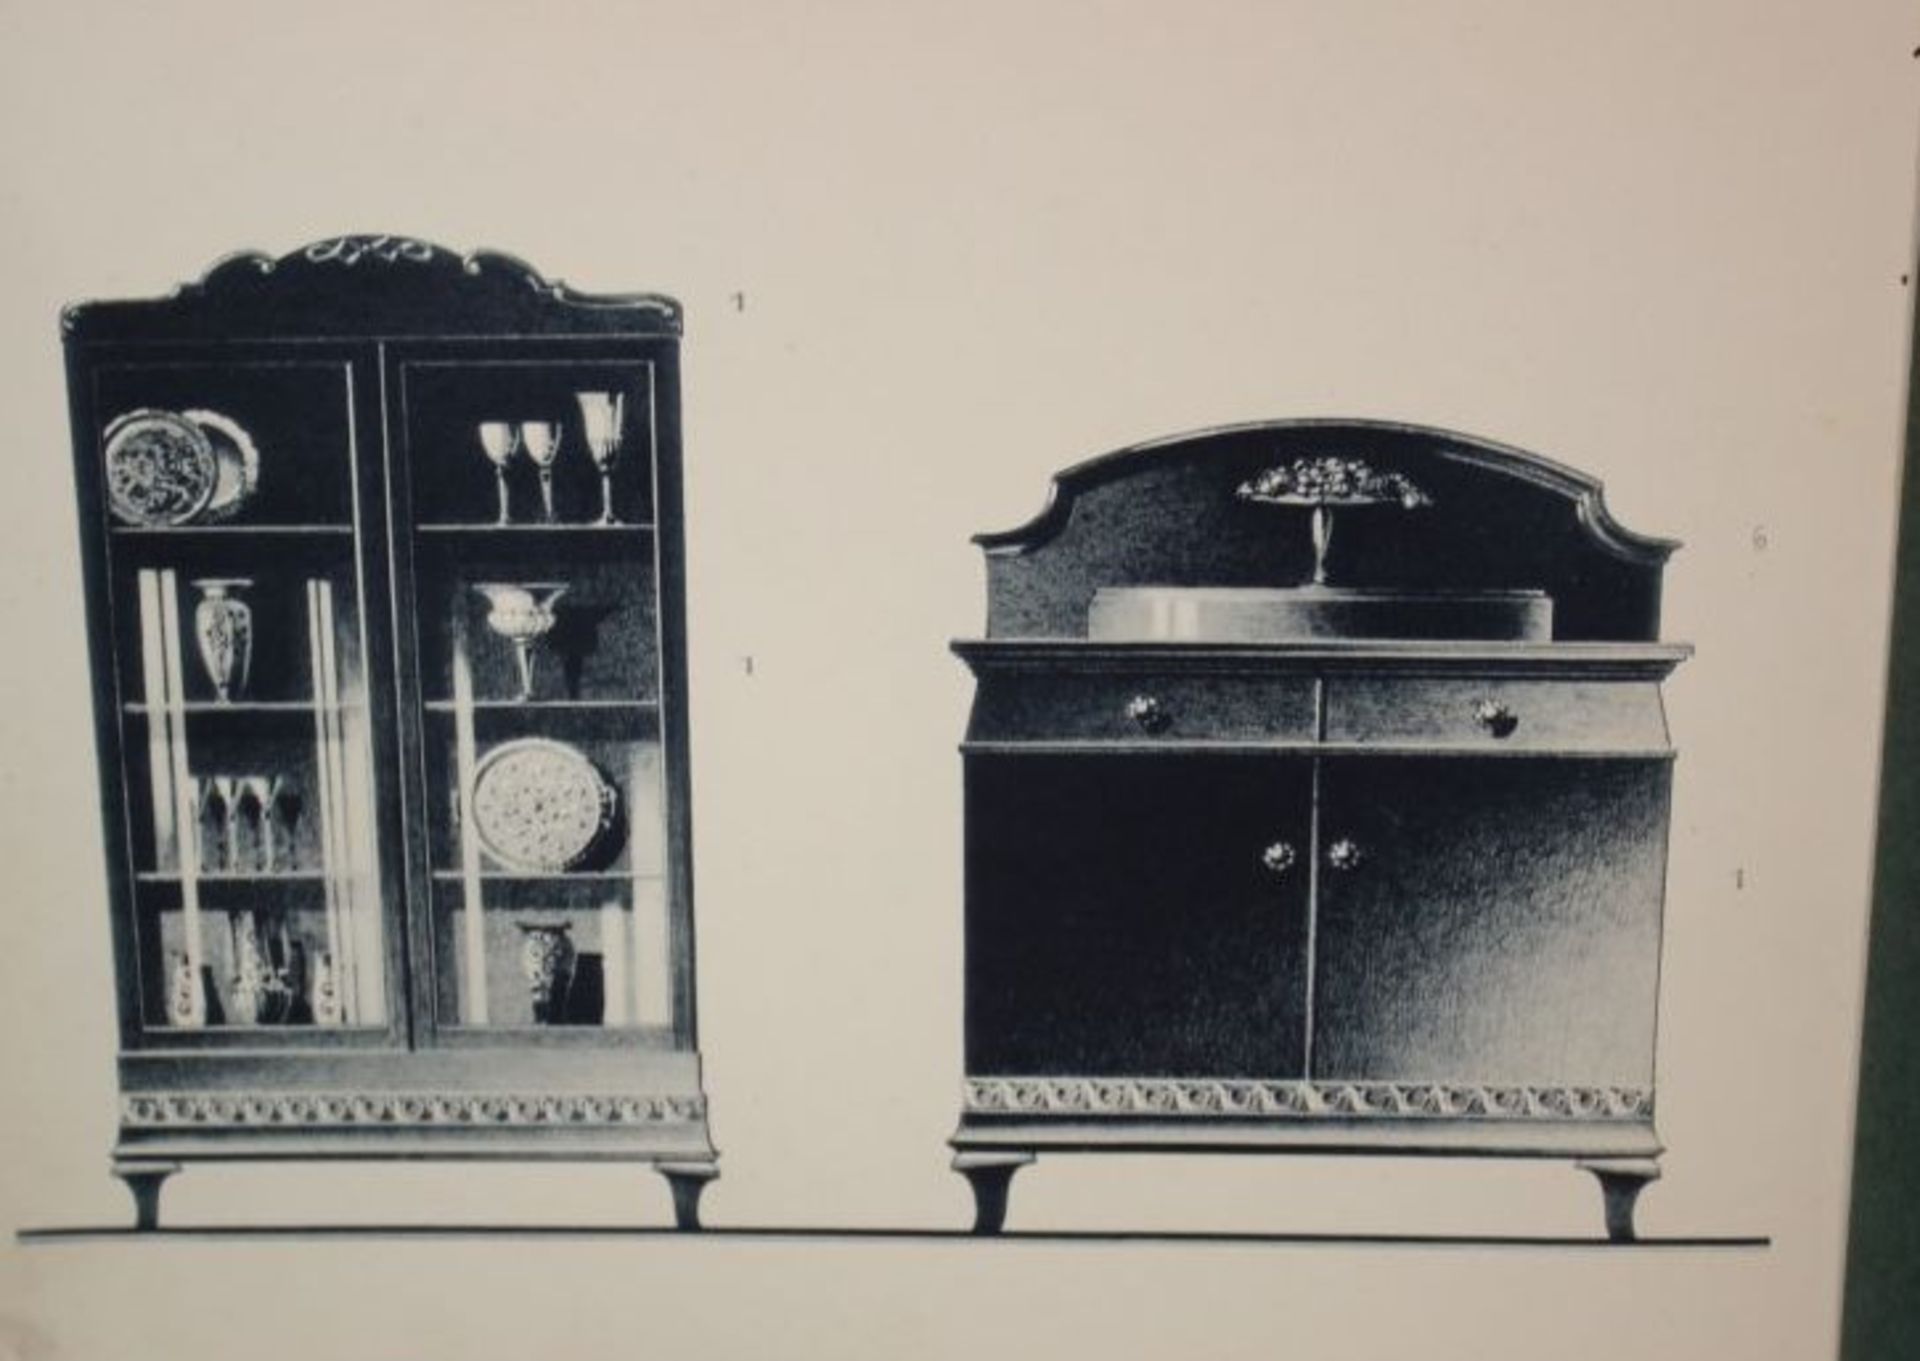 Modellkatalog "Speisezimmer", 1. Ausgabe wohl um 1920, Alters-u. Gebrauchsspuren - Bild 2 aus 4